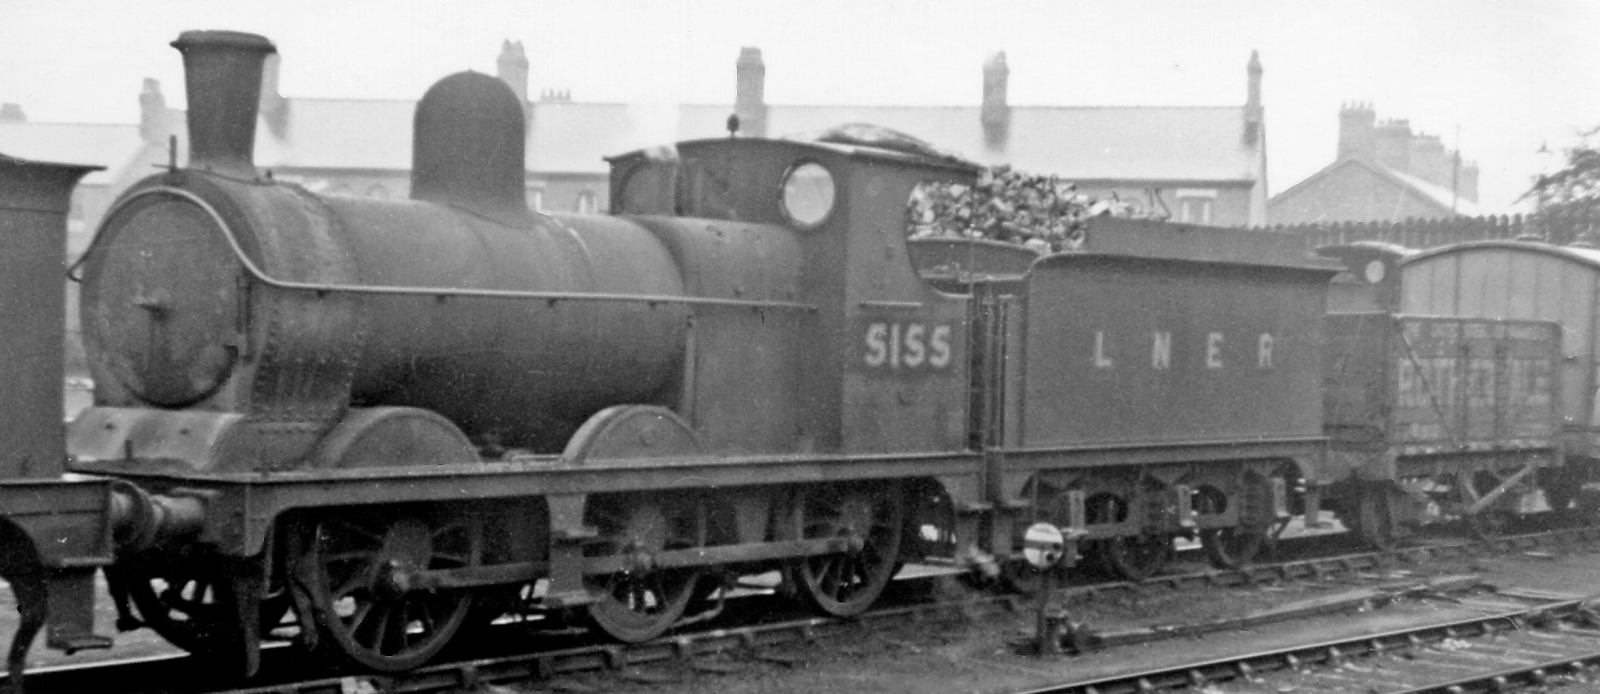 LNER 5155 in September 1947 at Northwich Depot